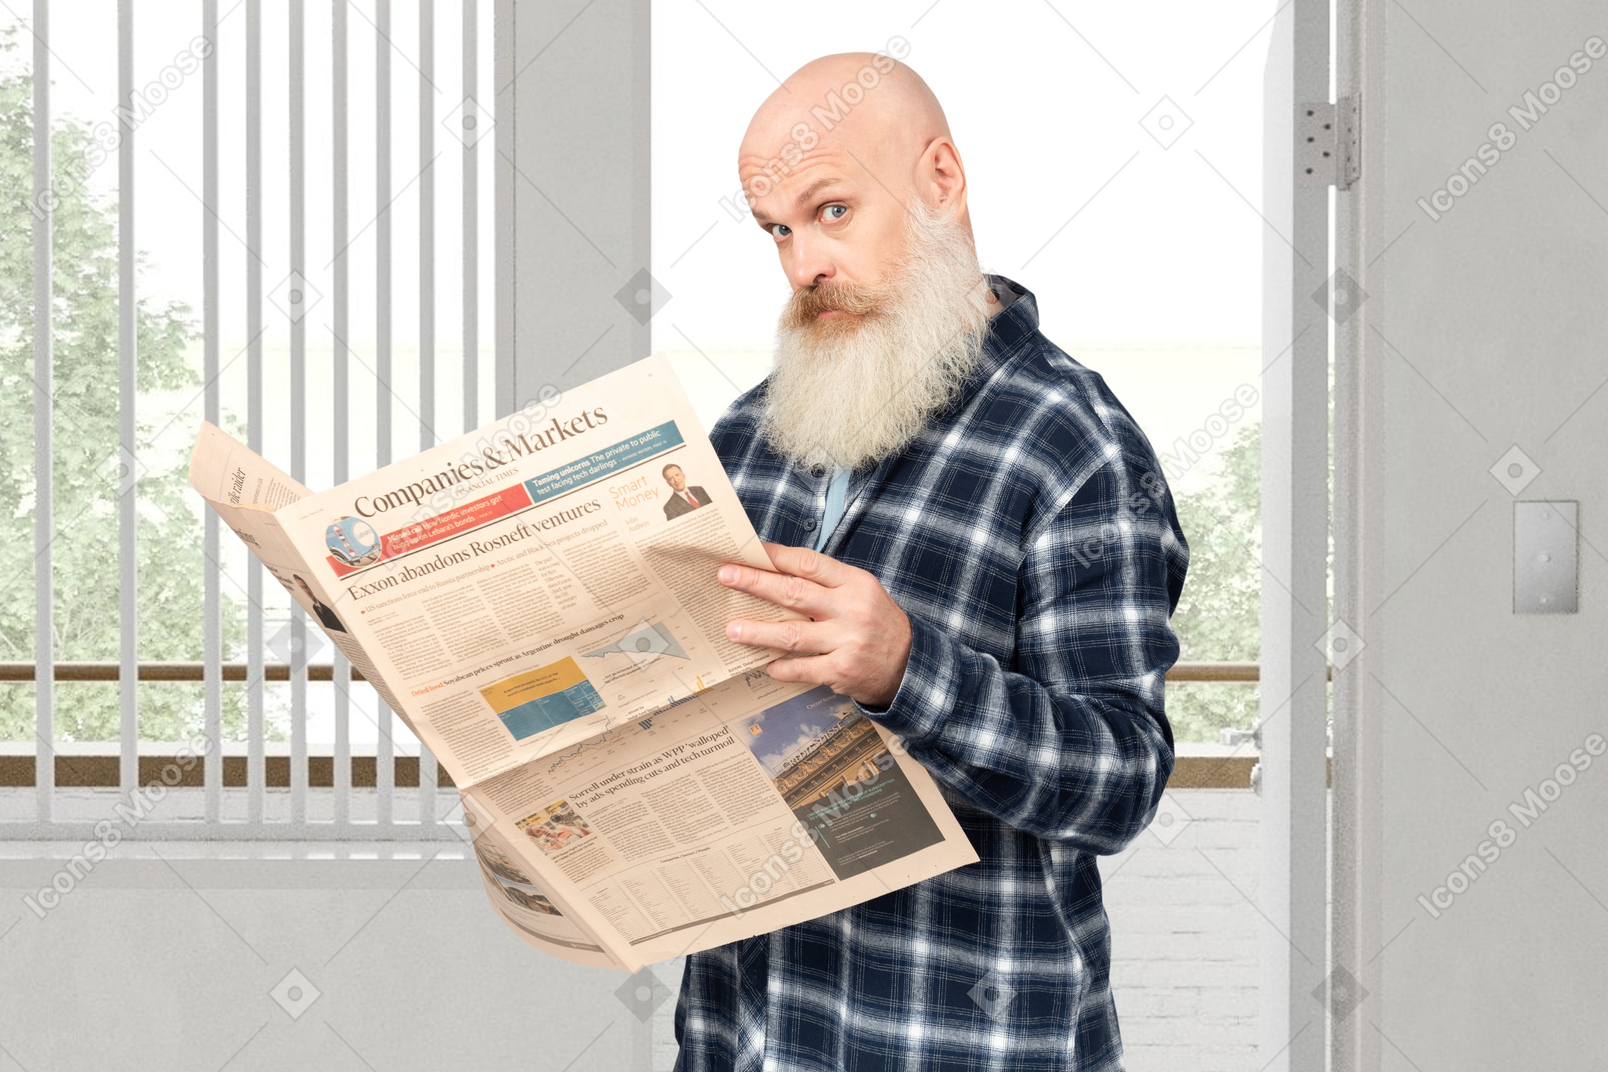 A man holding a newspaper